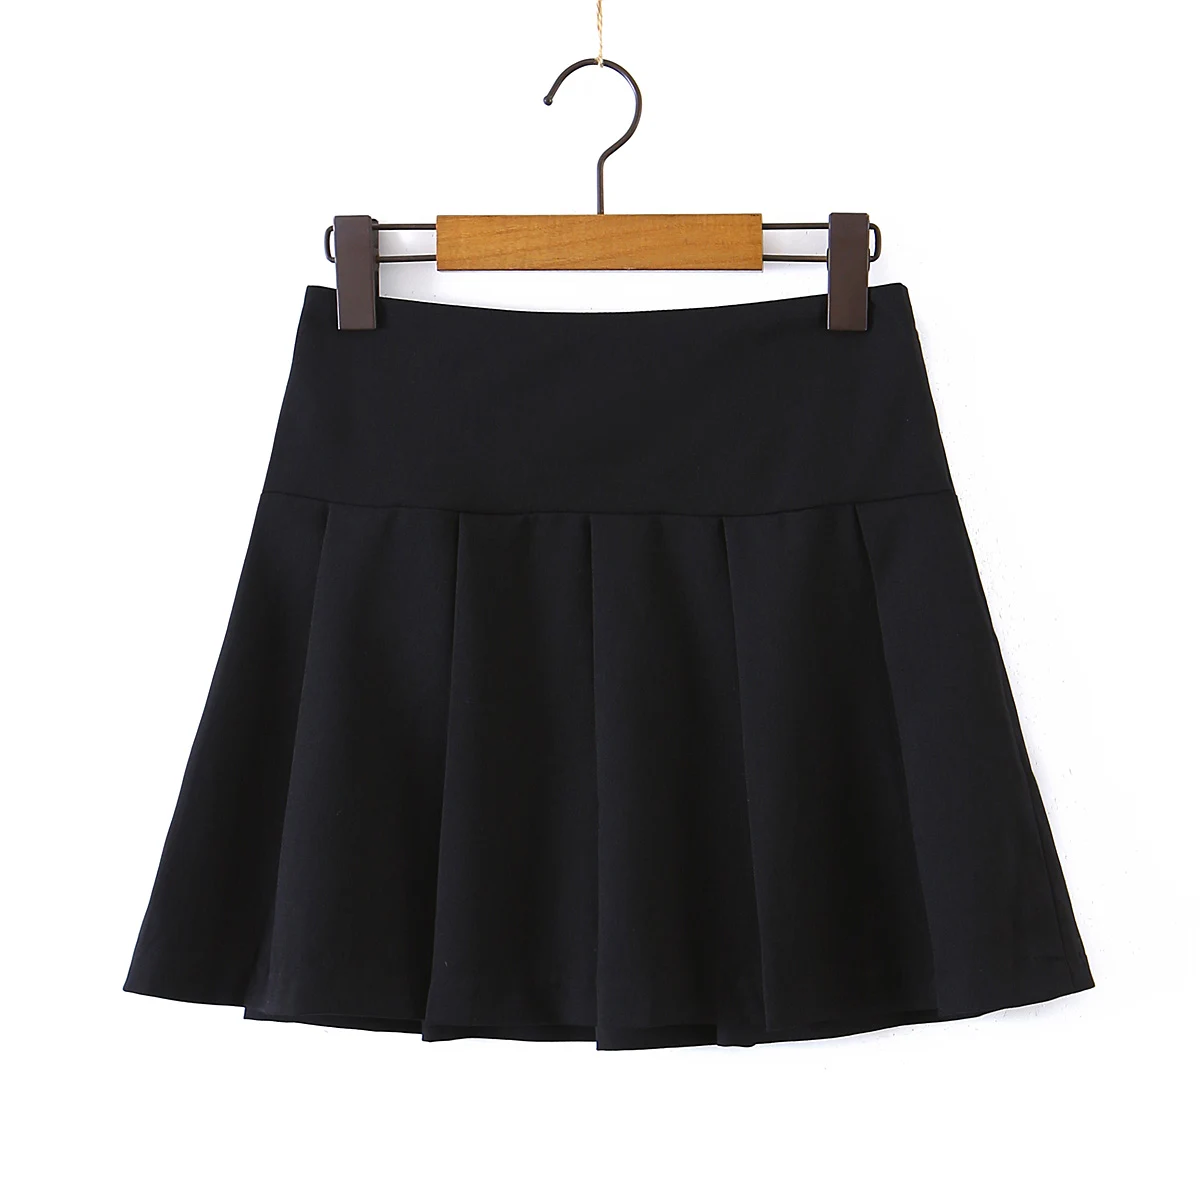 Faldas Plisadas Cortas Con Cremallera Para Mujer,Diseño Vintage,Color Negro - Buy Faldas De Las Para Mujer,Falda Plisada Product on Alibaba.com